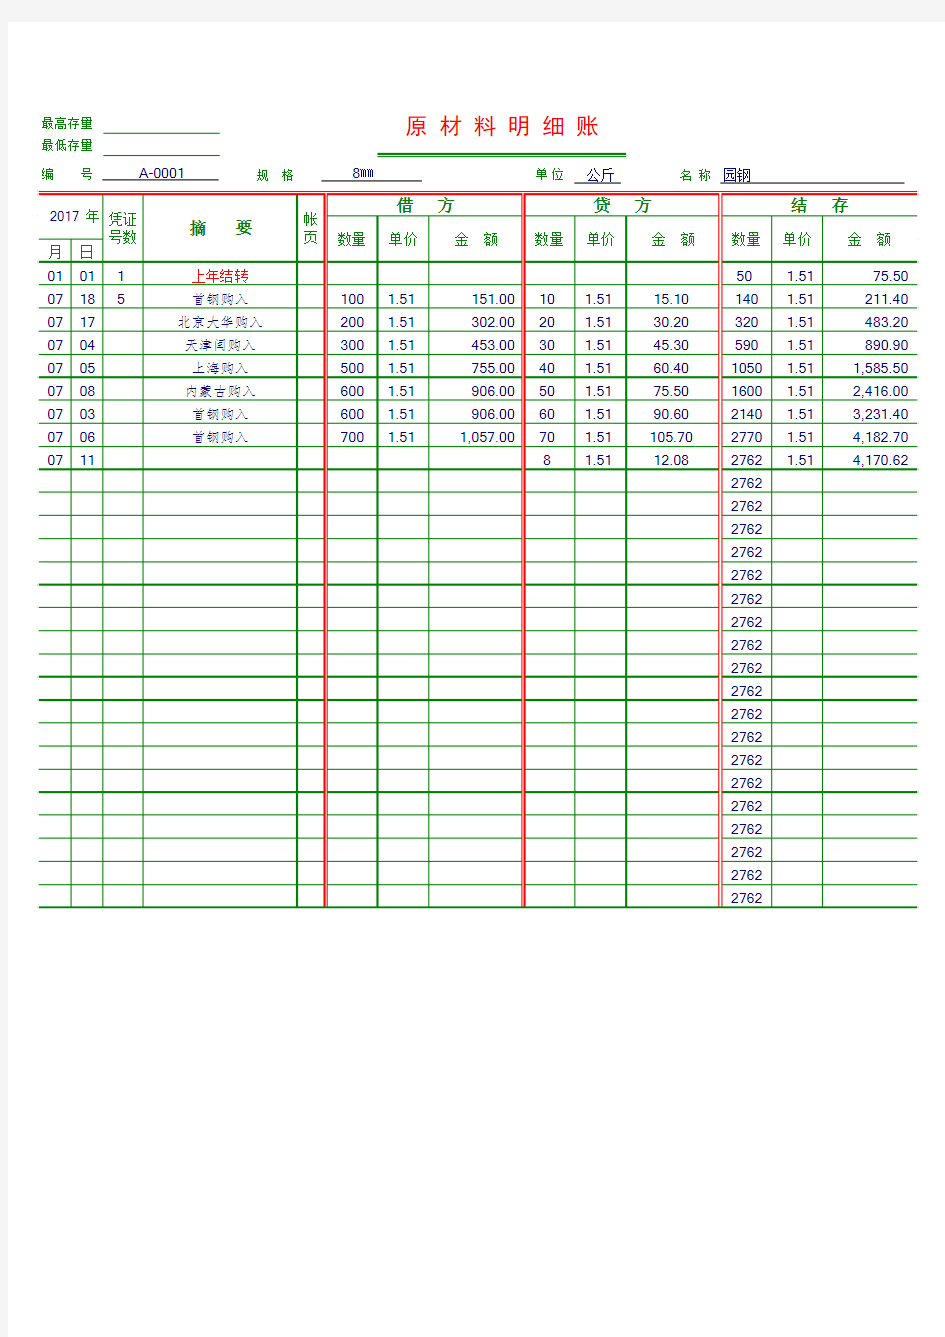 原材料明细账单表格Excel表格